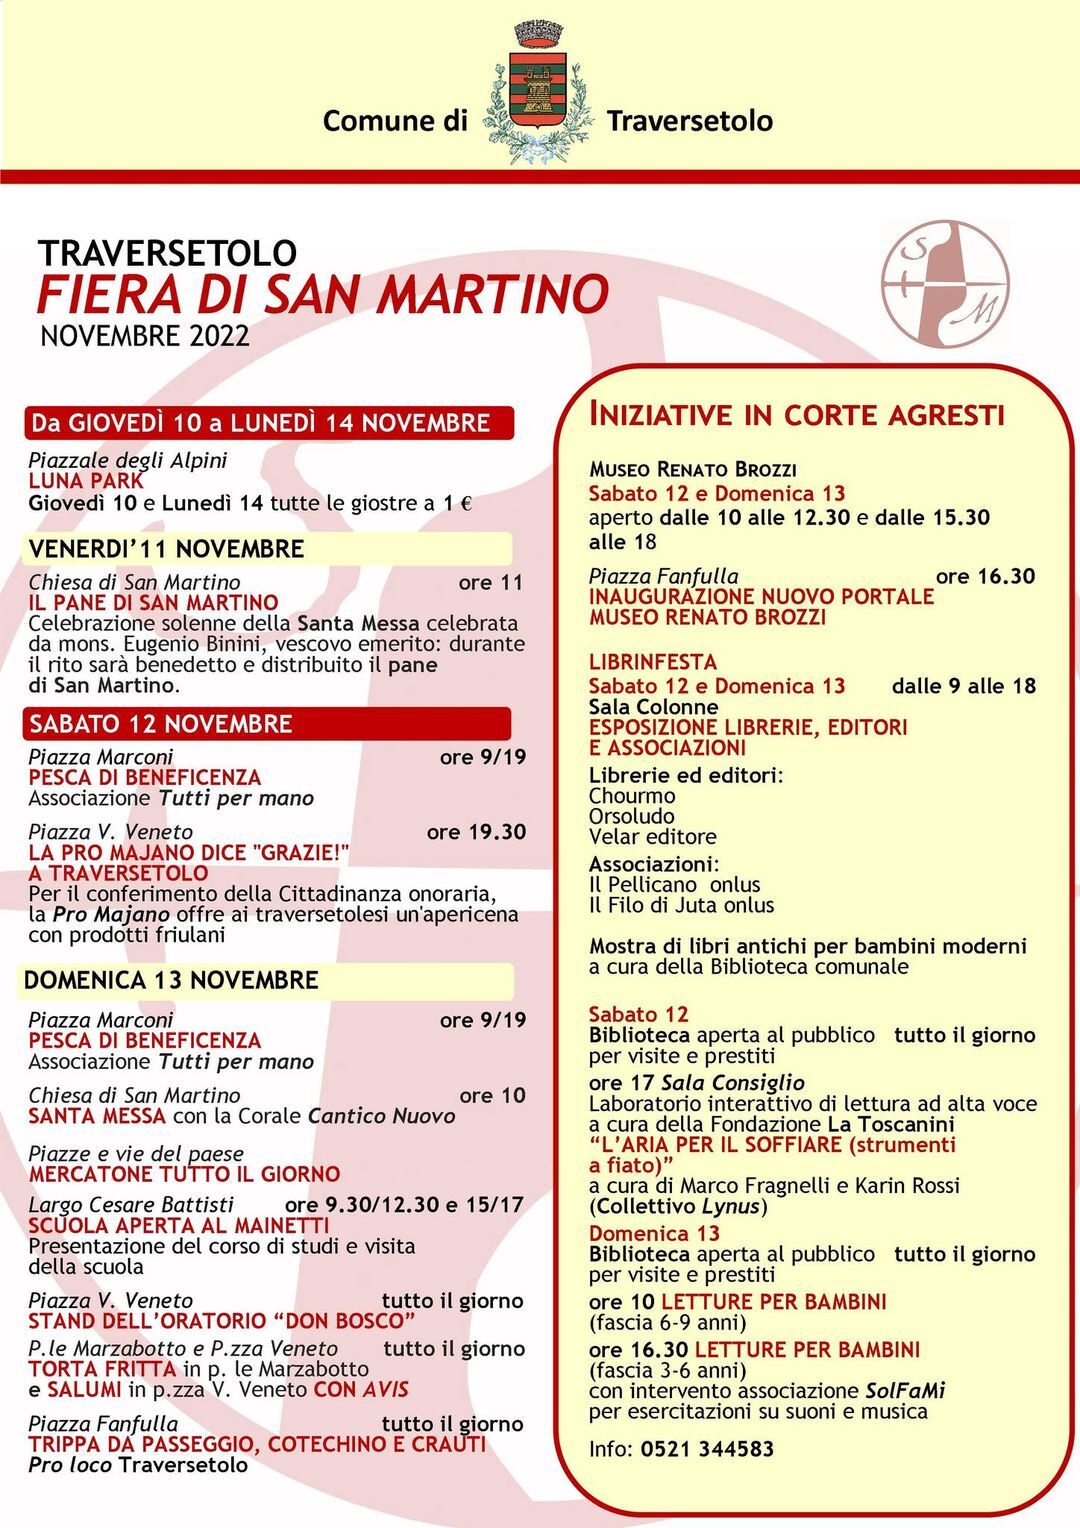 Traversetolo: Fiera di San Martino, dal 10 al 14 novembre 2022